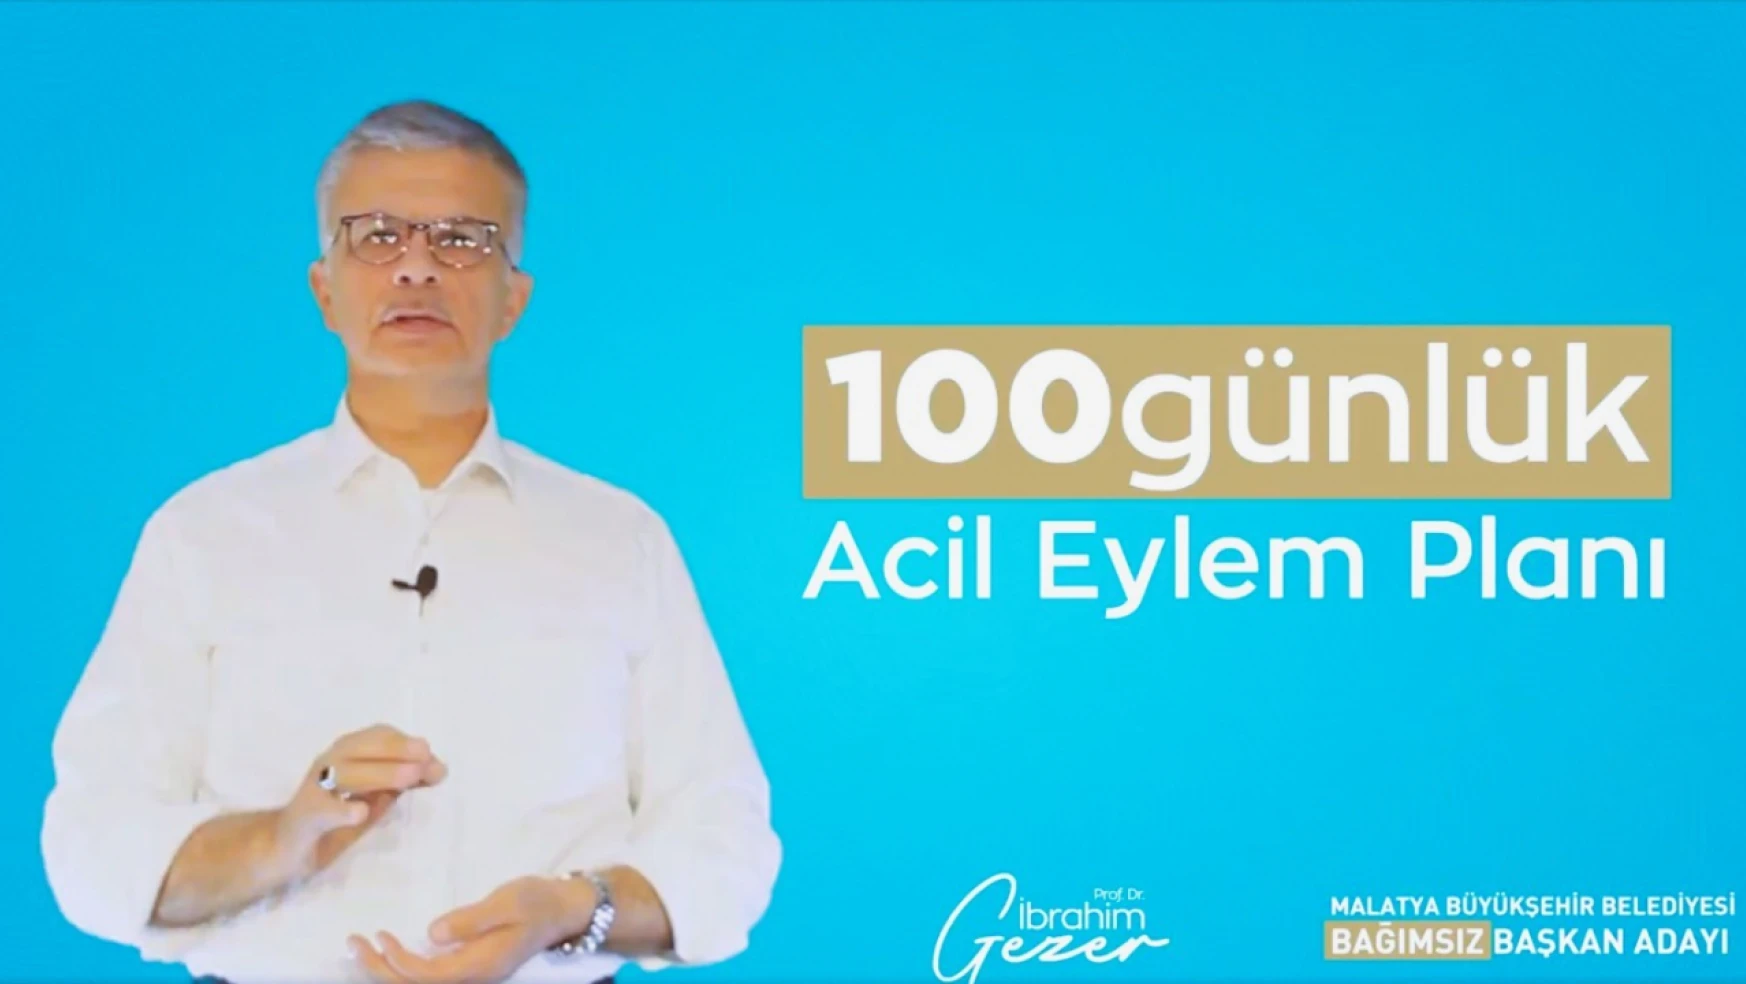 Malatya Büyükşehir Belediyesi Bağımsız Başkan Adayı Prof. Dr. Gezer, 100 Günlük Acil Eylem Planını Açıkladı